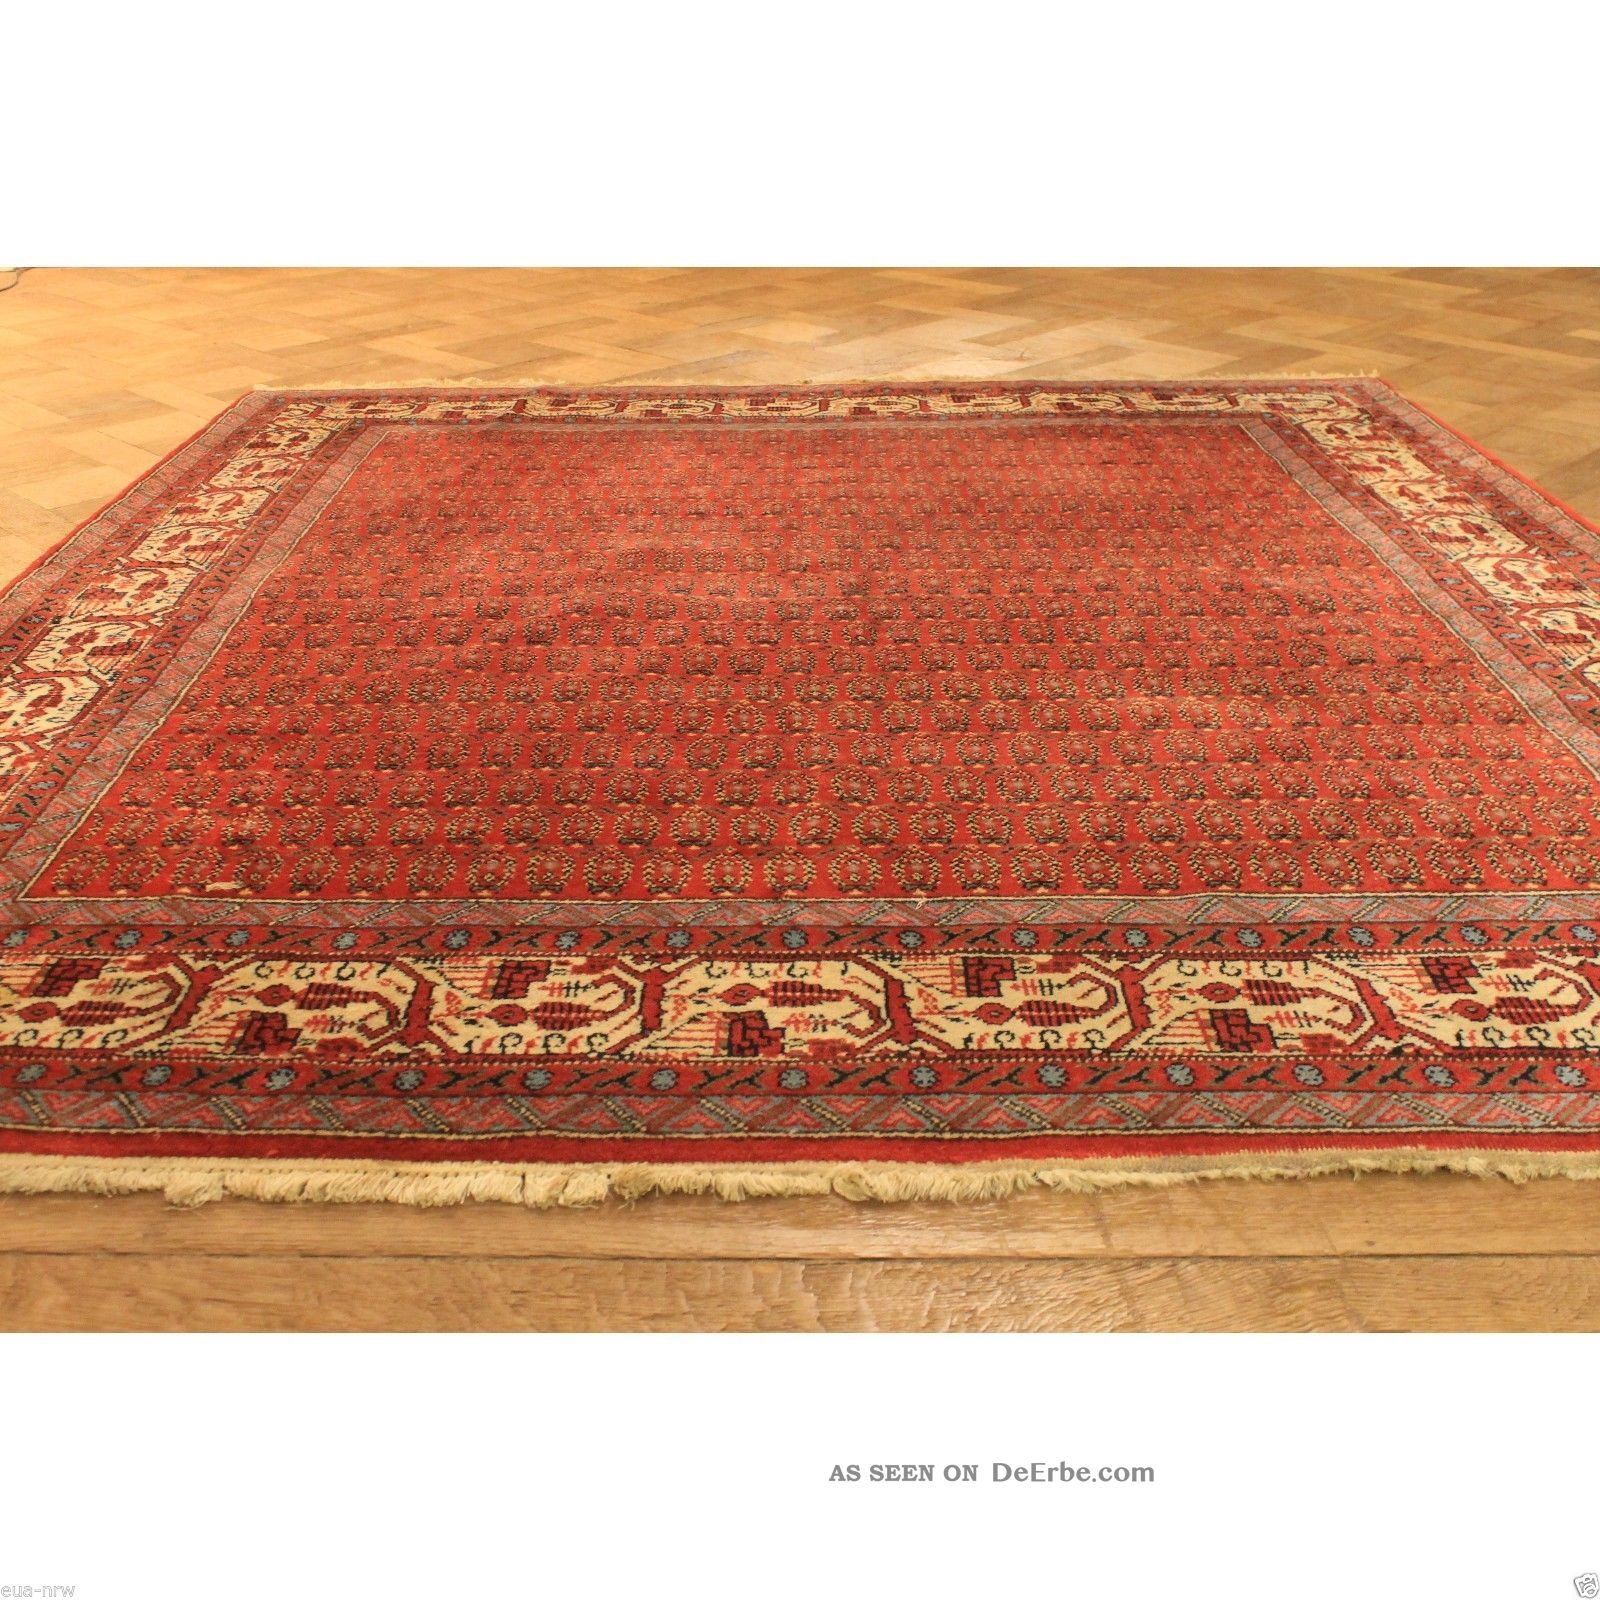 Wunderschöner Handgeknüpfter Orient Palast Blumen Teppich 200x200cm Rug Carpet Teppiche & Flachgewebe Bild